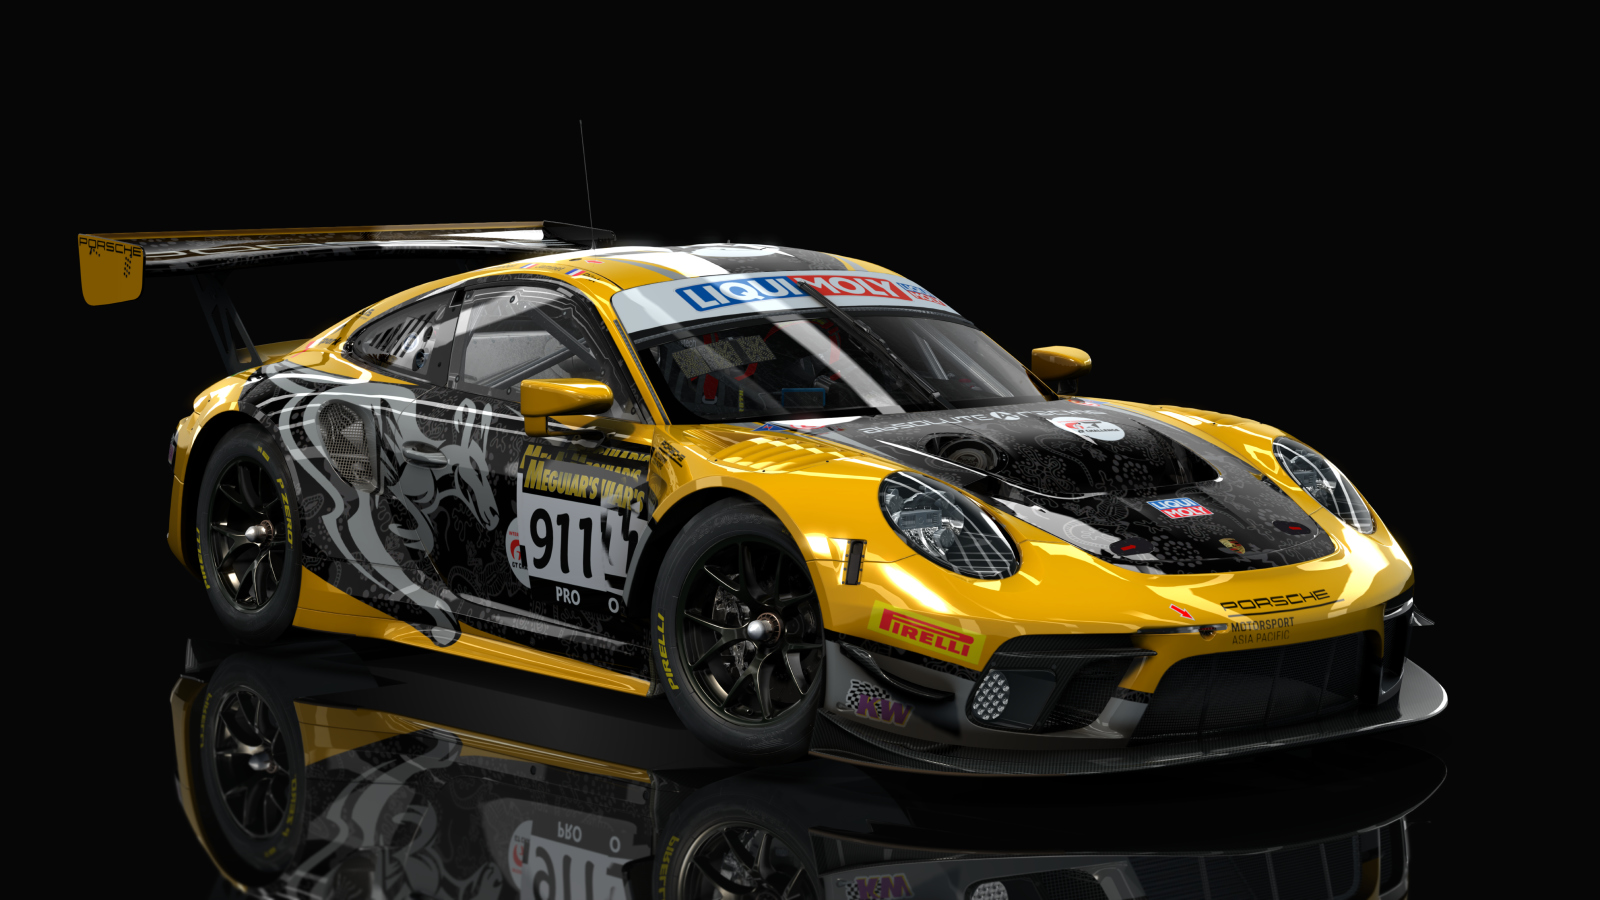 VB Porsche 991 GT3 R 2020, skin Absolute_Racing_#912_Bathurst_2020